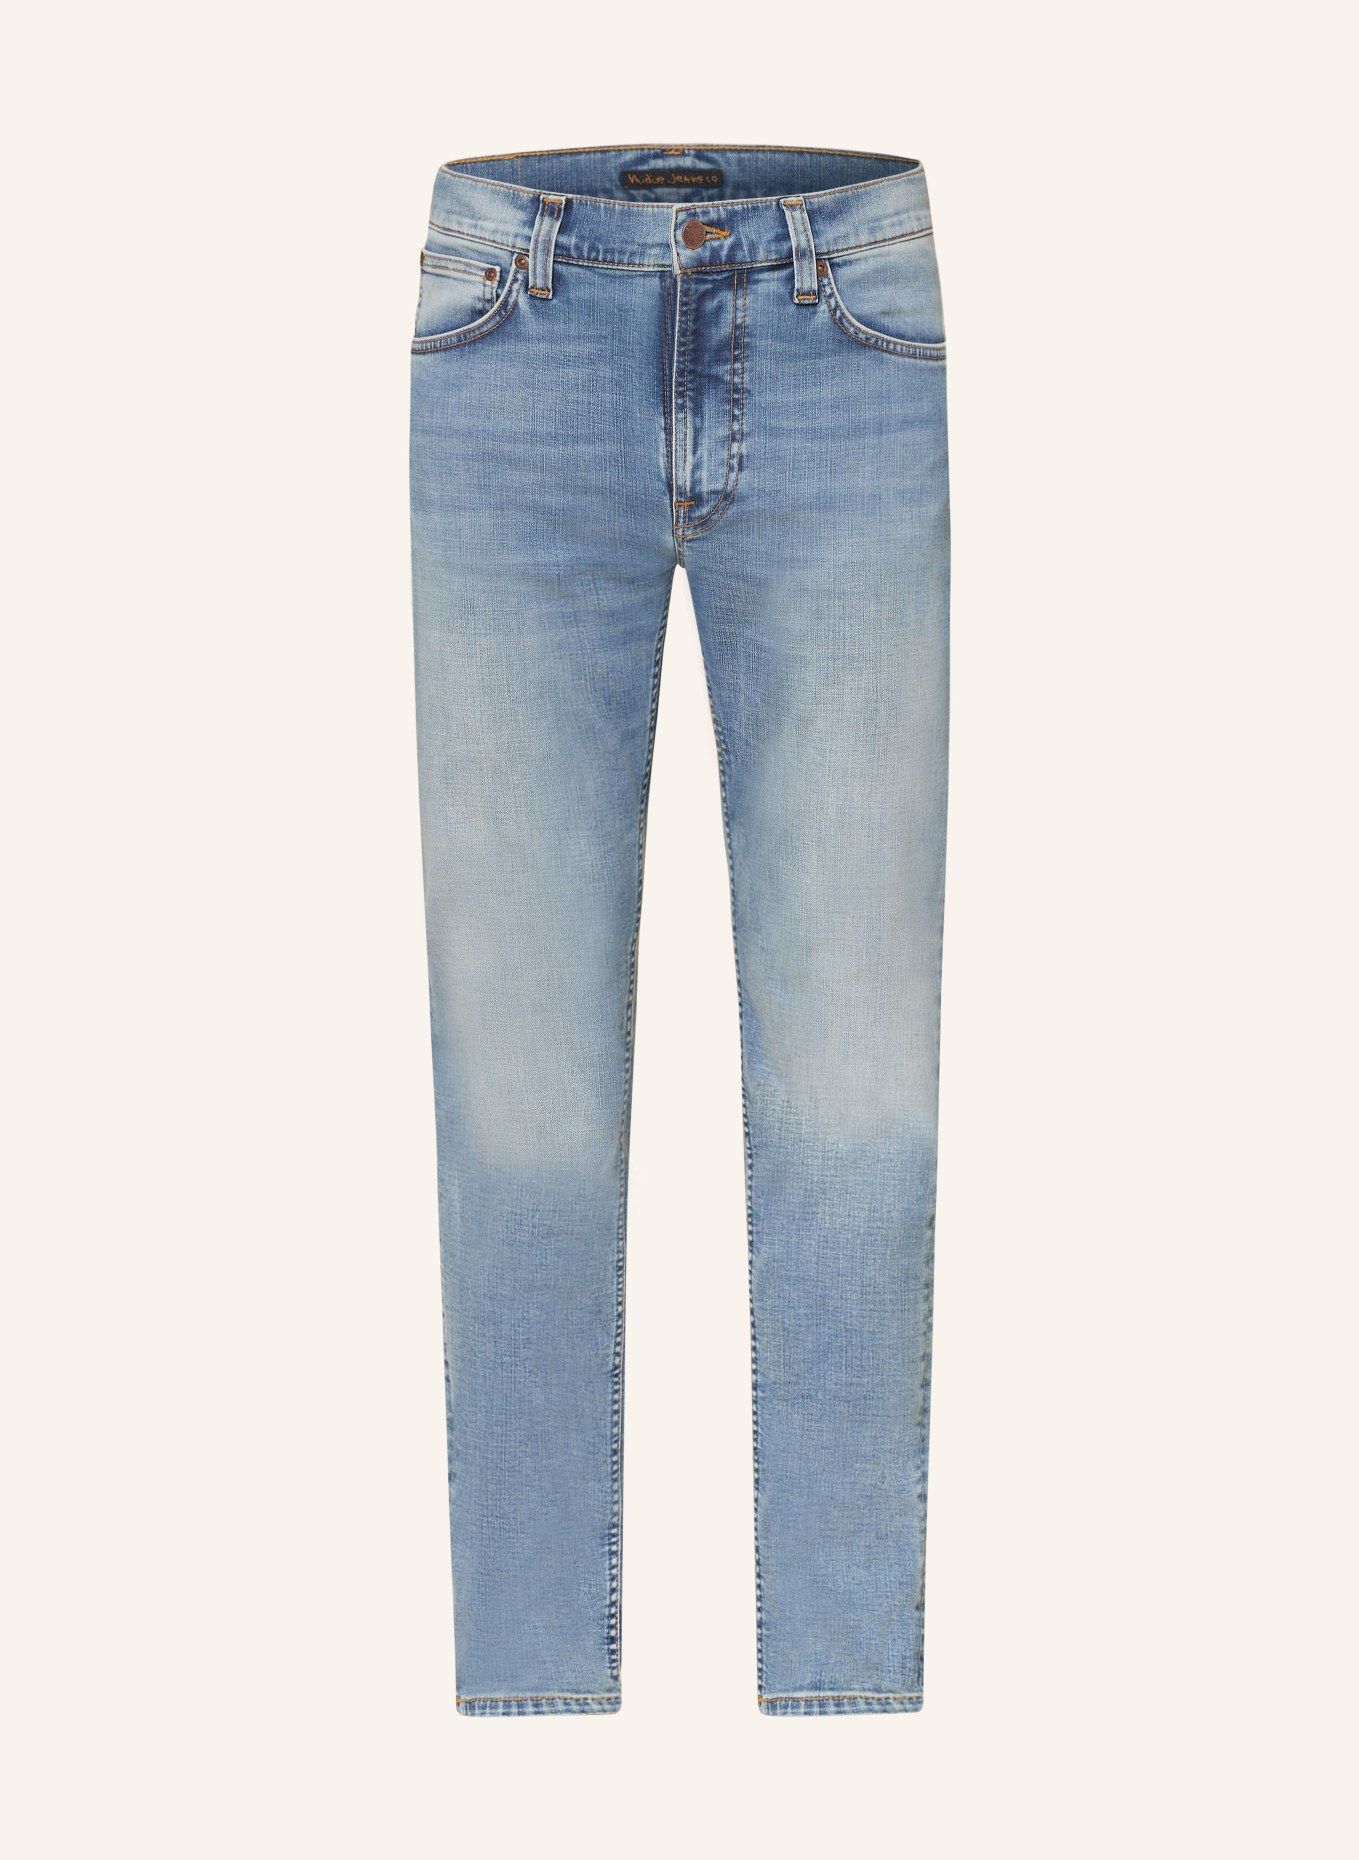 Nudie Jeans Jeans LEAN DEAN Extra Slim Fit, Farbe: Broken Blue (Bild 1)